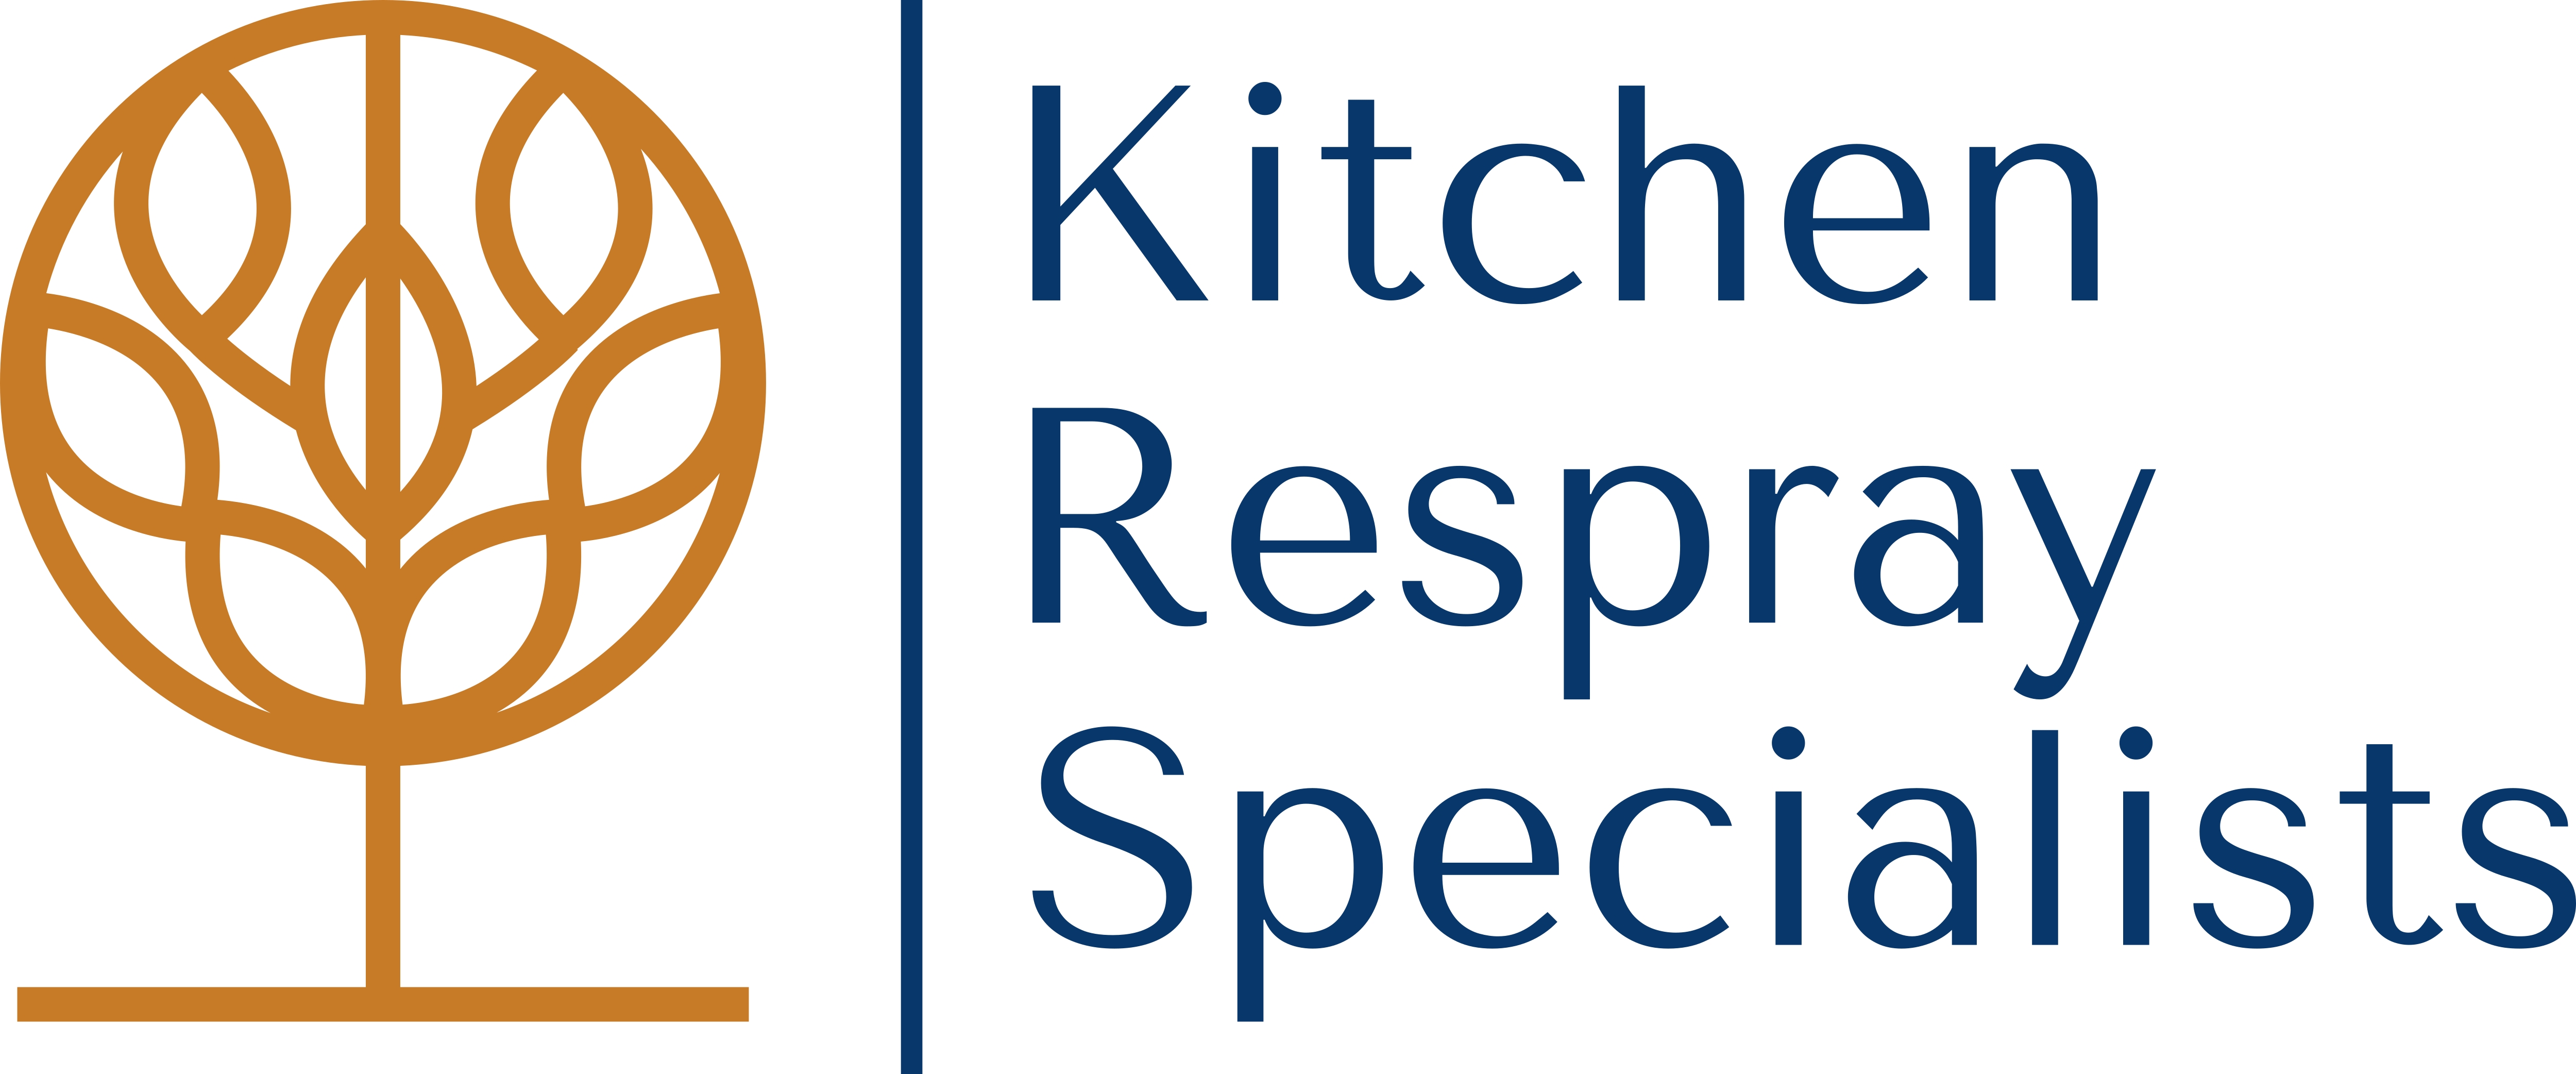 Kitchen Respray Specialists